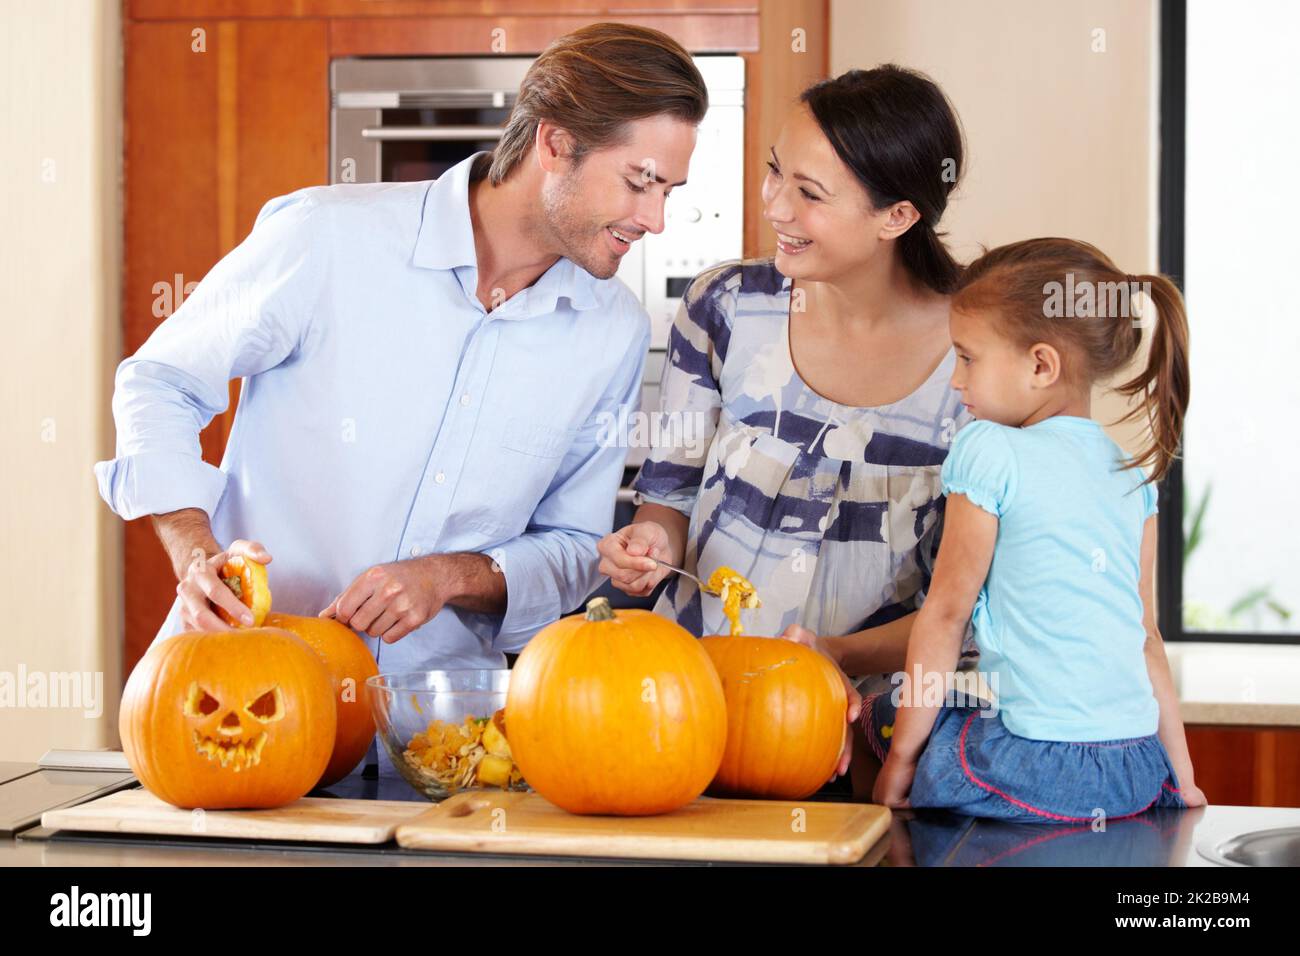 Preparare la zucca per Halloween. Una giovane madre e un padre in piedi con la loro figlia in una cucina che prepara Jack Olanterns per Halloween. Foto Stock